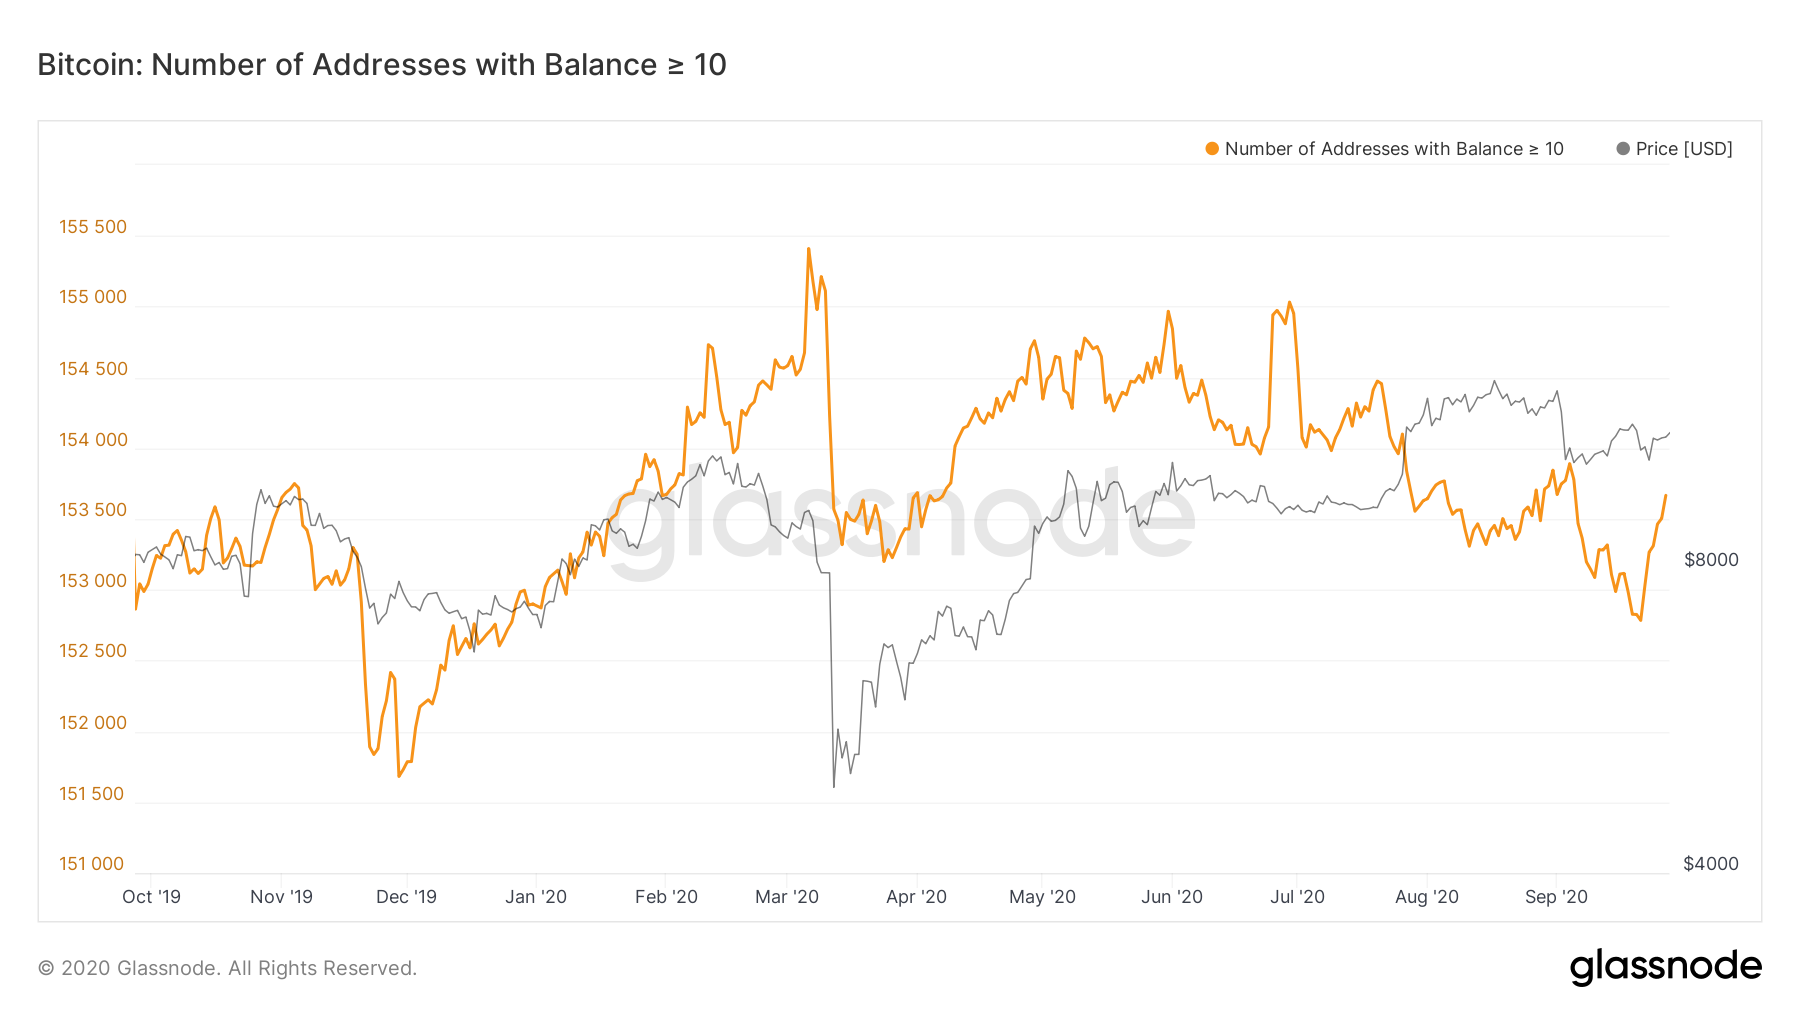 Glassnode: ончейн-метрики говорят о растущем числе долгосрочных держателей биткоина